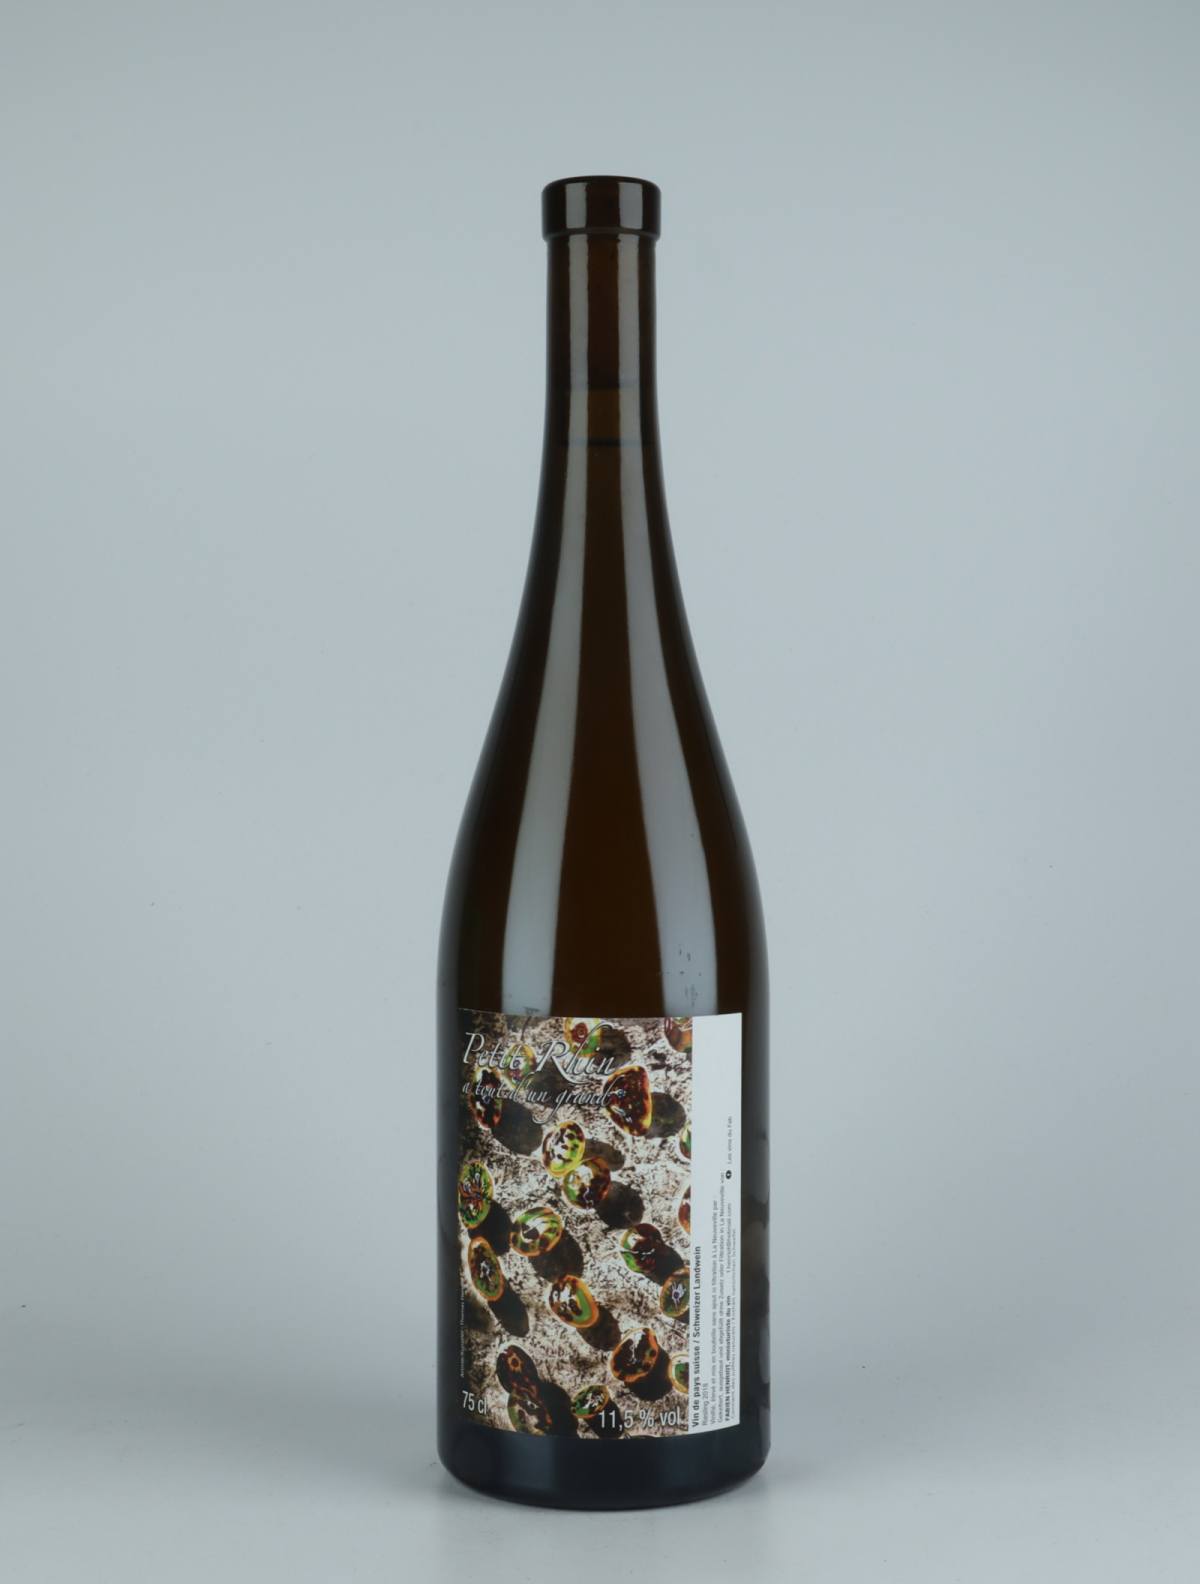 En flaske 2018 Riesling Hvidvin fra Les Vins du Fab, Neuchâtel i Schweiz